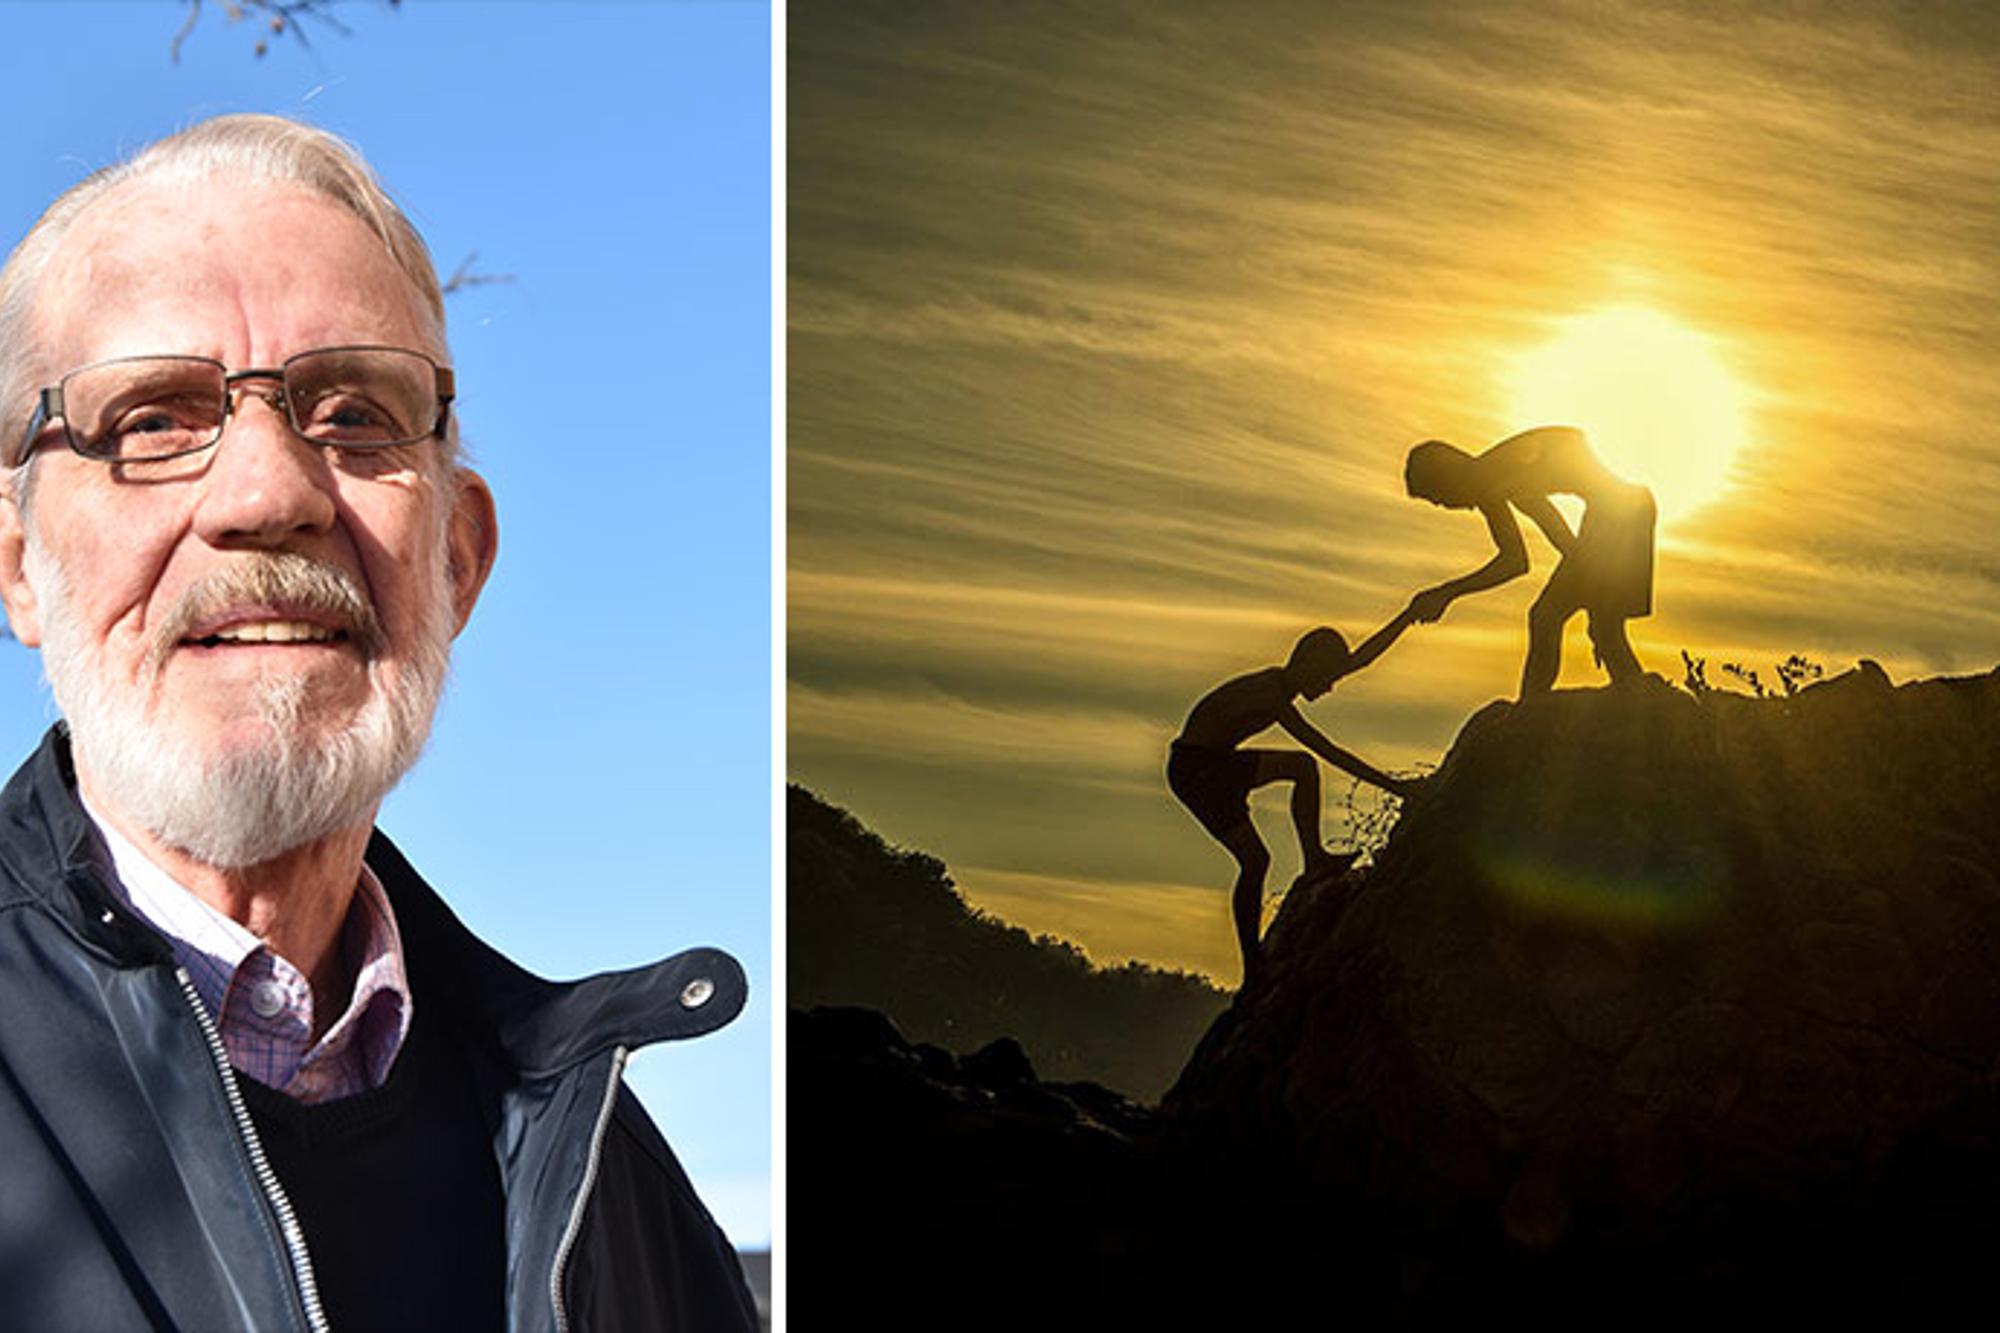 Till vänster: Porträttbild av Jerker Lindén. Till höger: En person som får hjälp upp för ett berg av en annan person, och med en solnedgång i bakgrunden.